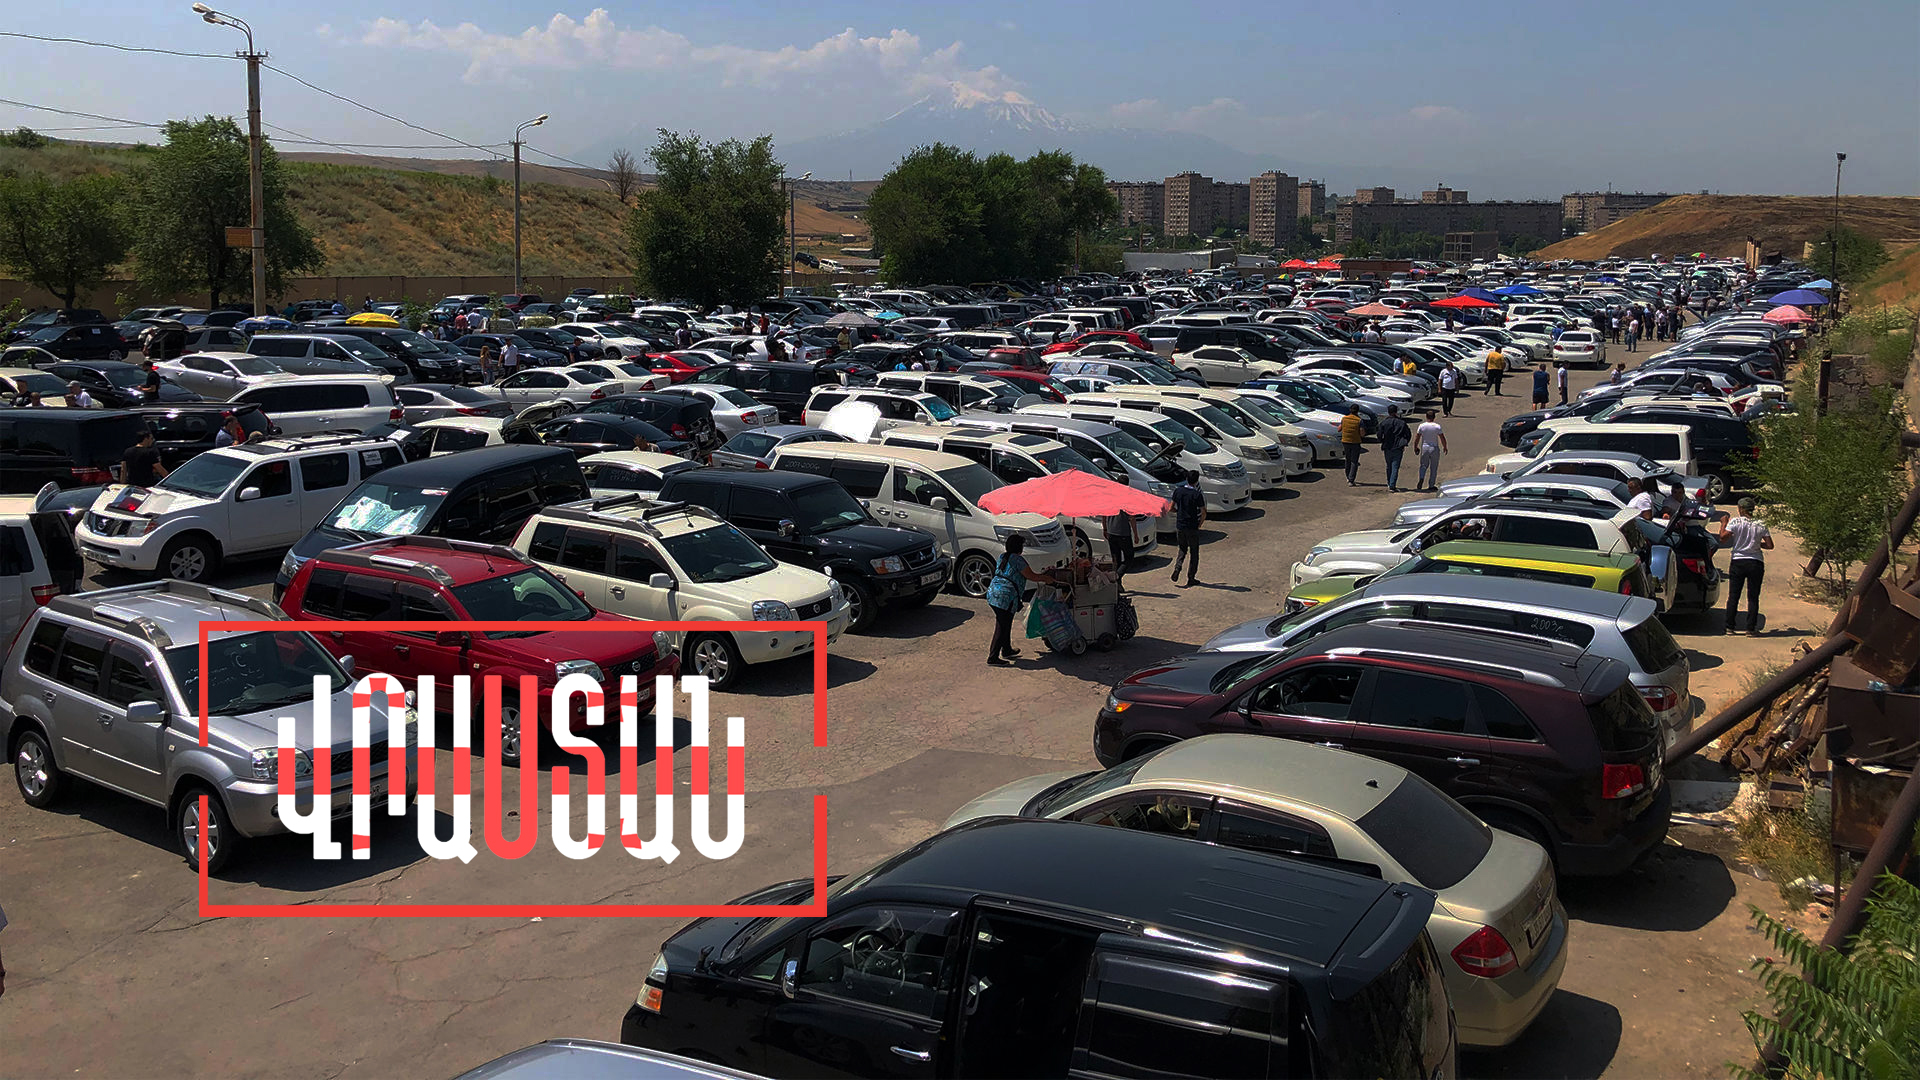 Վրաստանից Հայաստան ներկրվող մեքենաների թիվը գրեթե տասնապատկվել է․ Վրաստանն այս շաբաթ